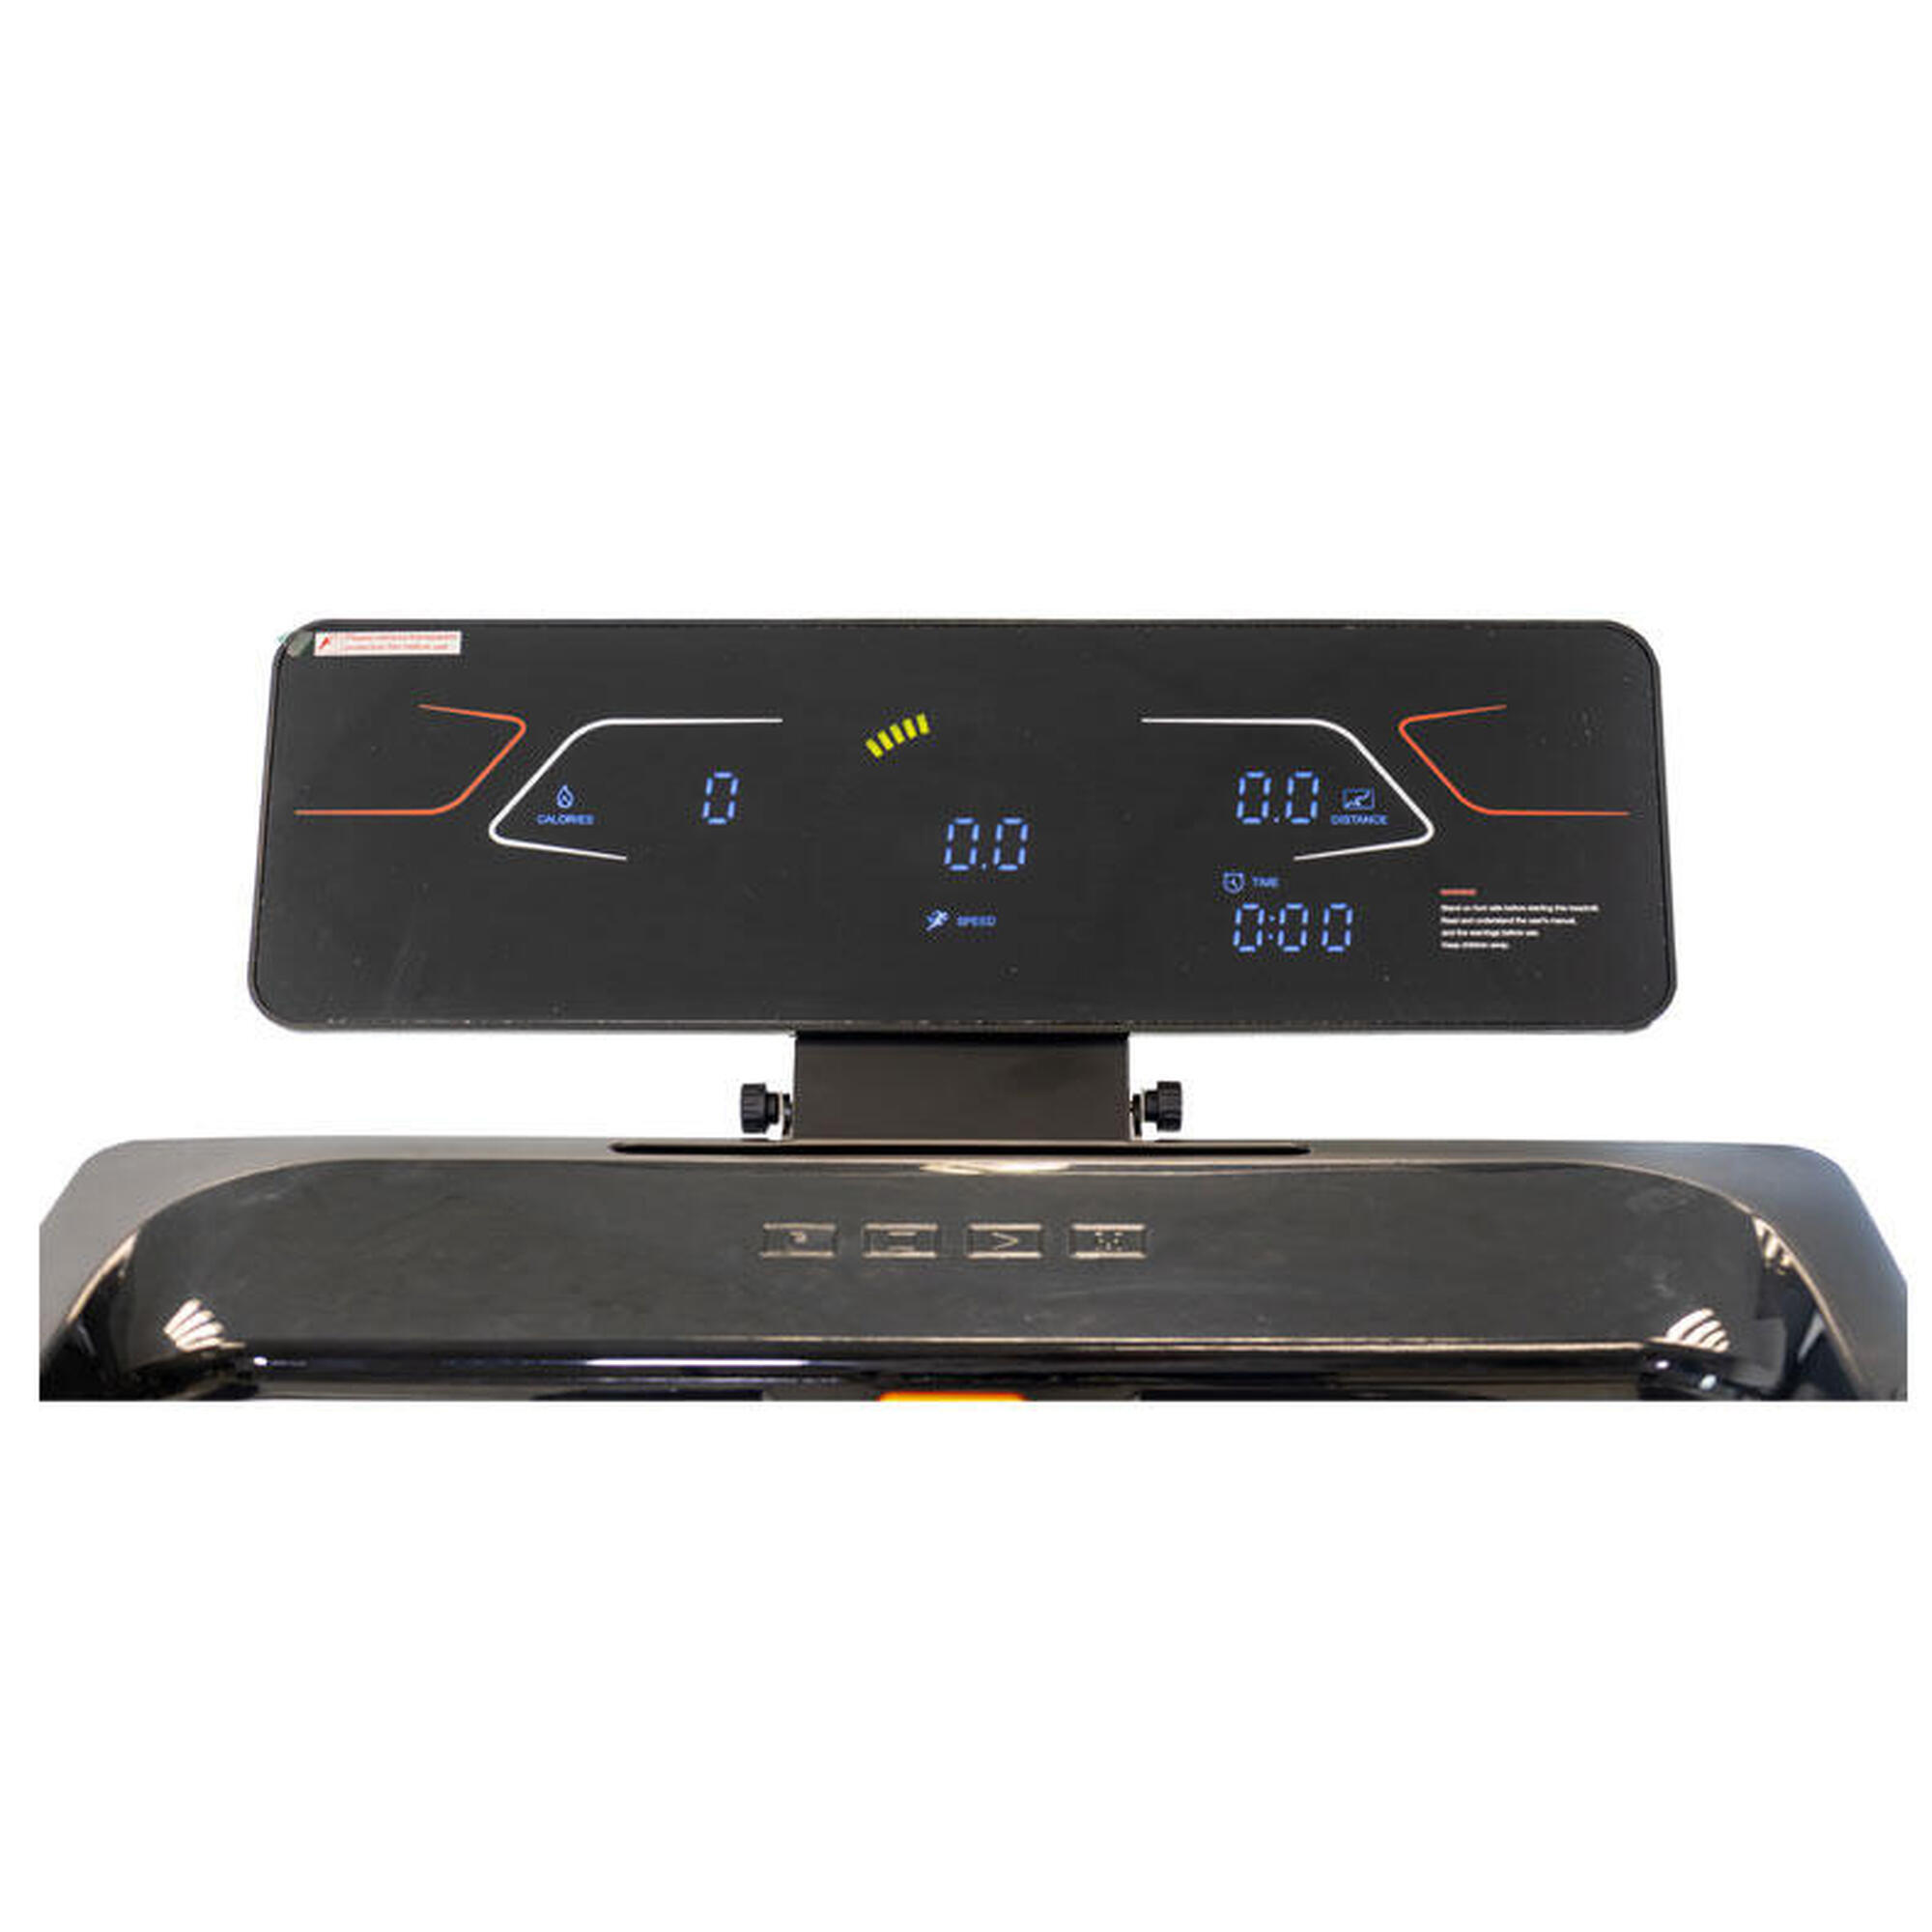 Laufband - New York - Kinomap und Zwift - 16km/h - 125x45cm - LCD